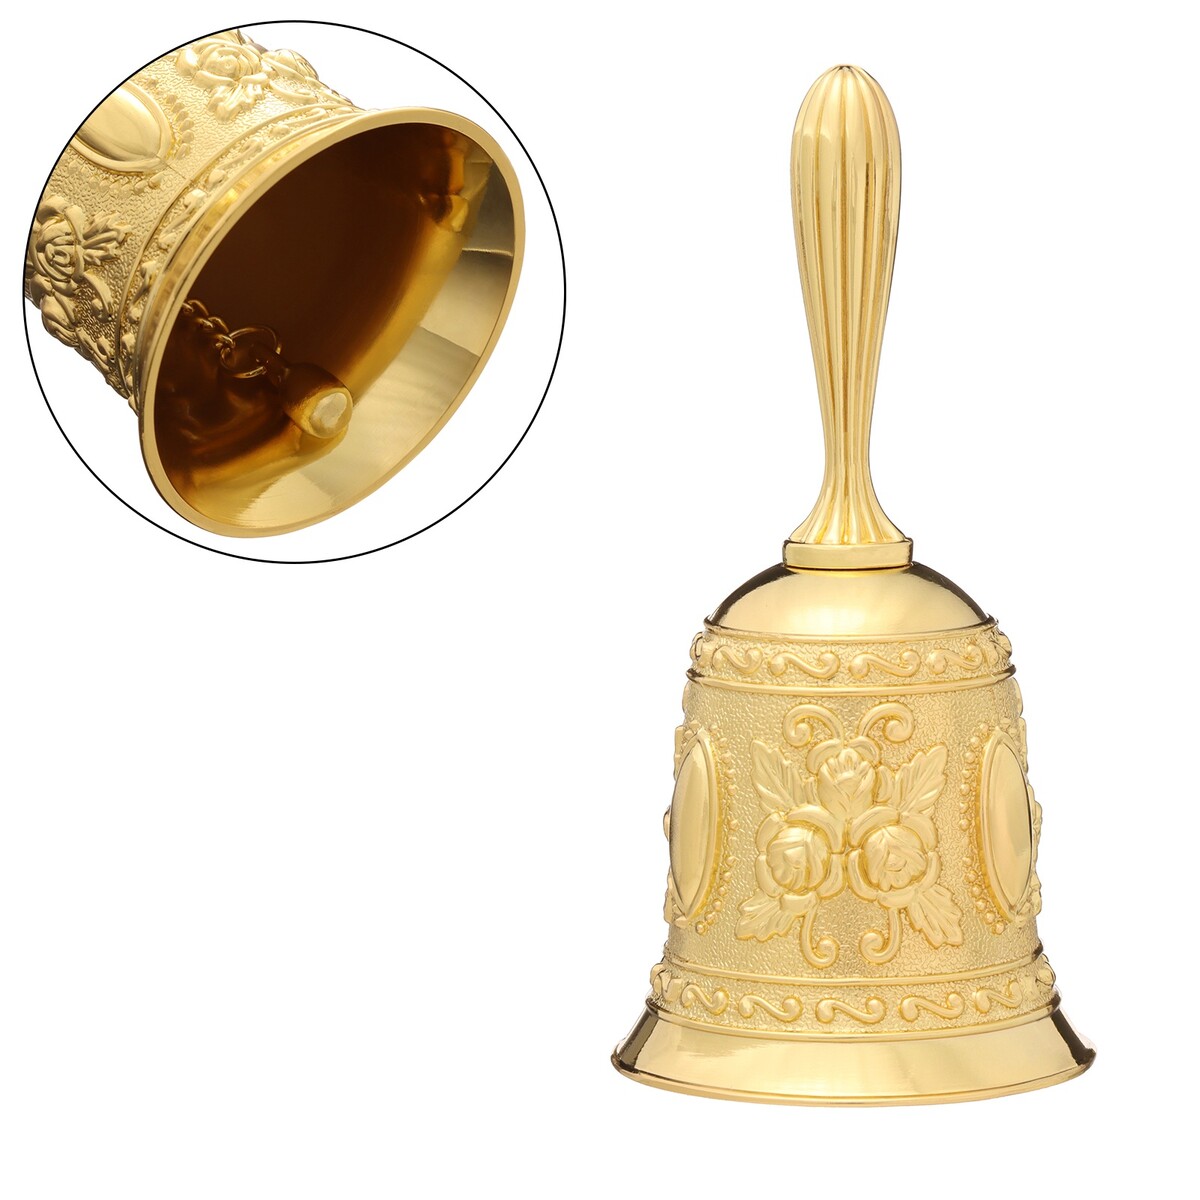 Колокольчик металлический с гравюрой, 11.3 х 5.4 см, золото колокольчик металлический с гравюрой 11 3 х 5 4 см золото